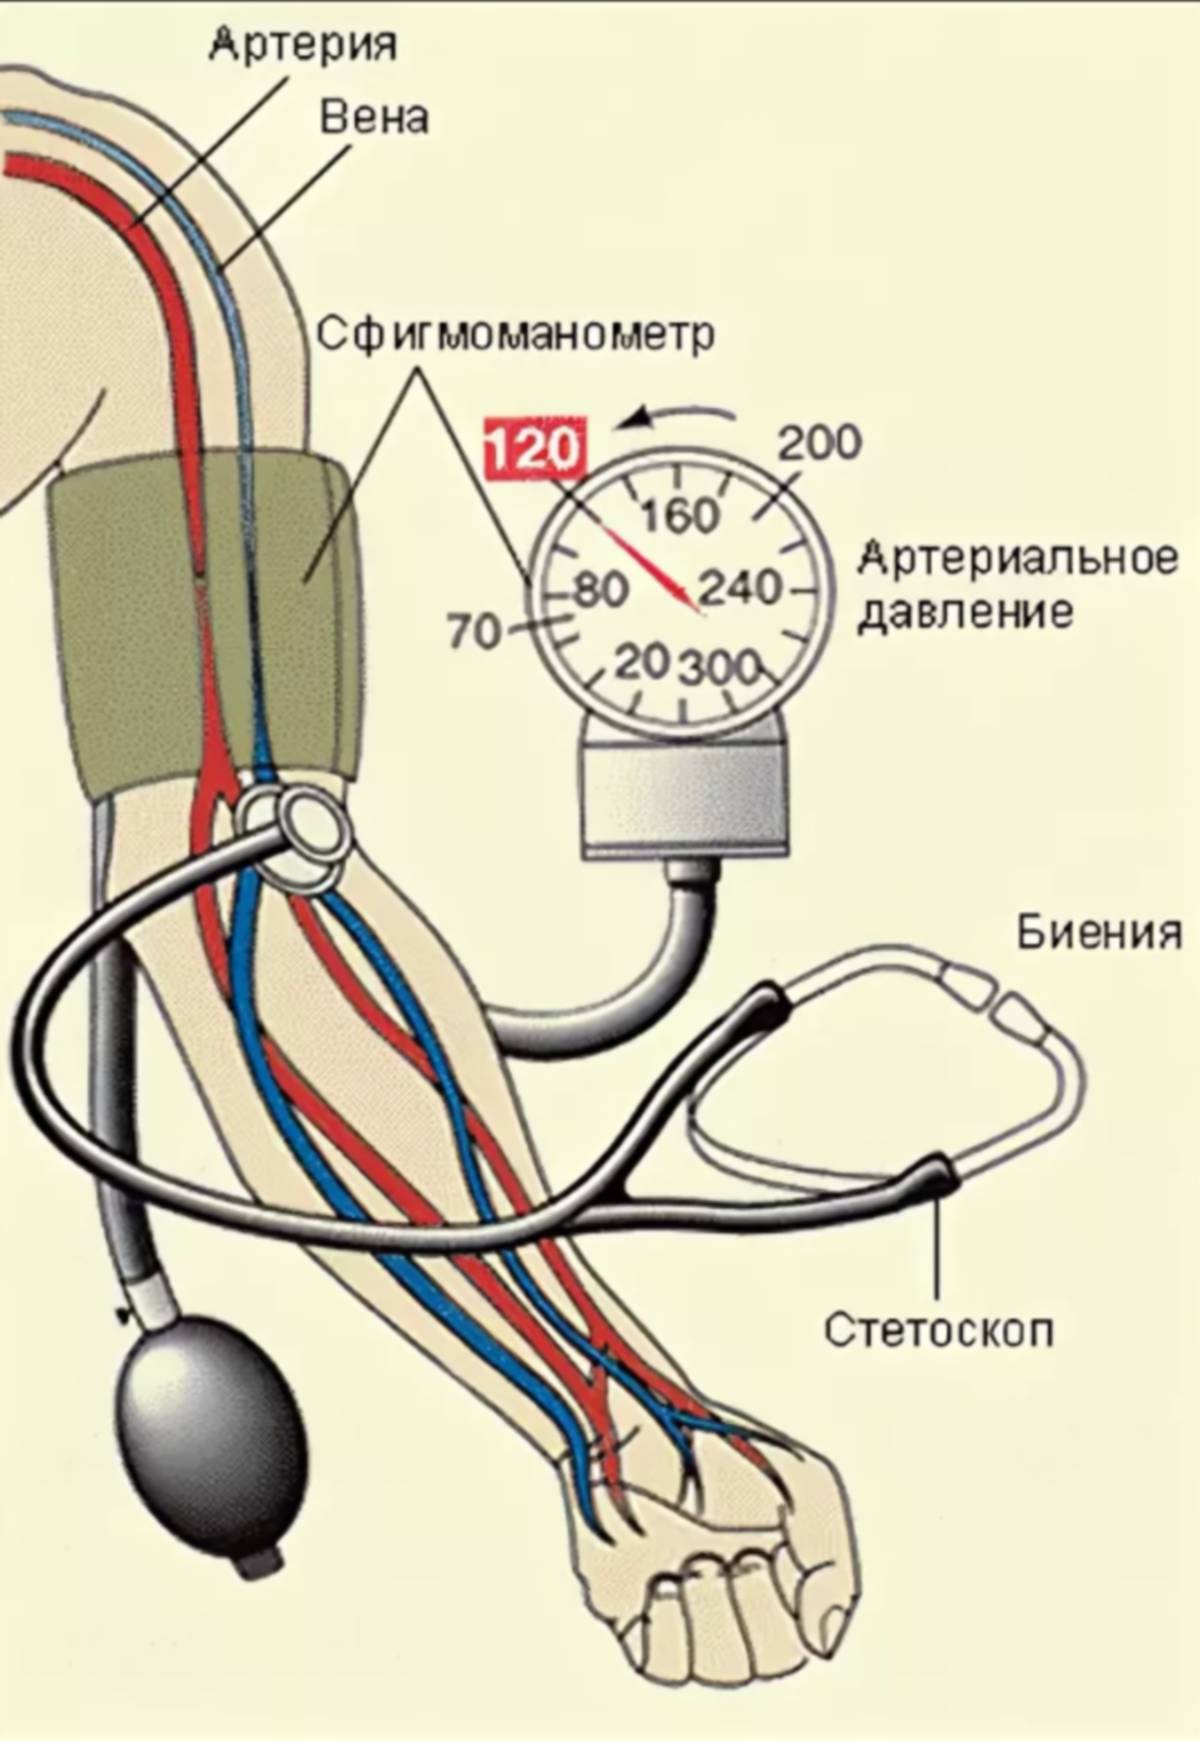 Предположите как изменялось артериальное давление. Измерение артериального давления механическим тонометром алгоритм. Измерение артериального давления на плечевой артерии. Схема измерения артериального давления тонометром. Алгоритм измерения давления механическим тонометром.